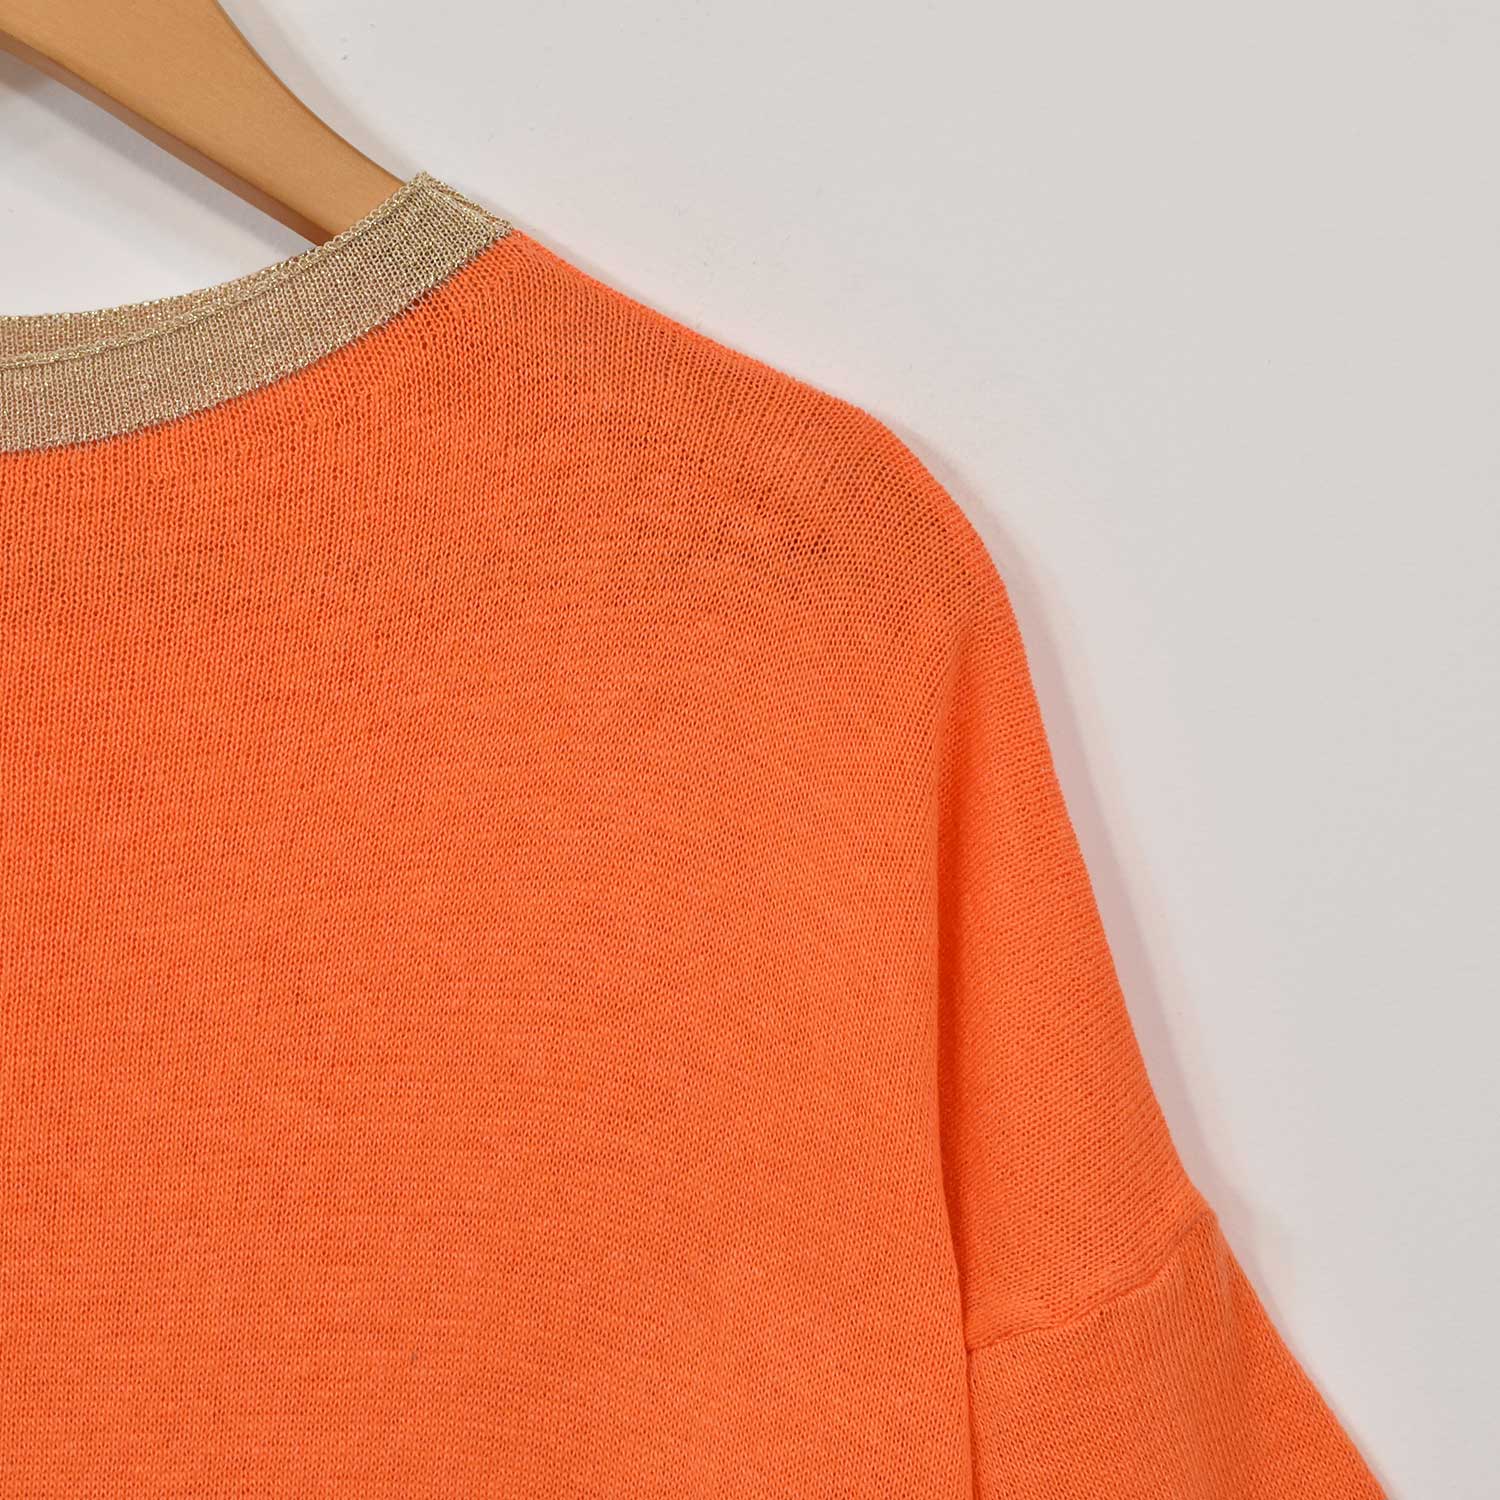 Orange shiny trim sweater